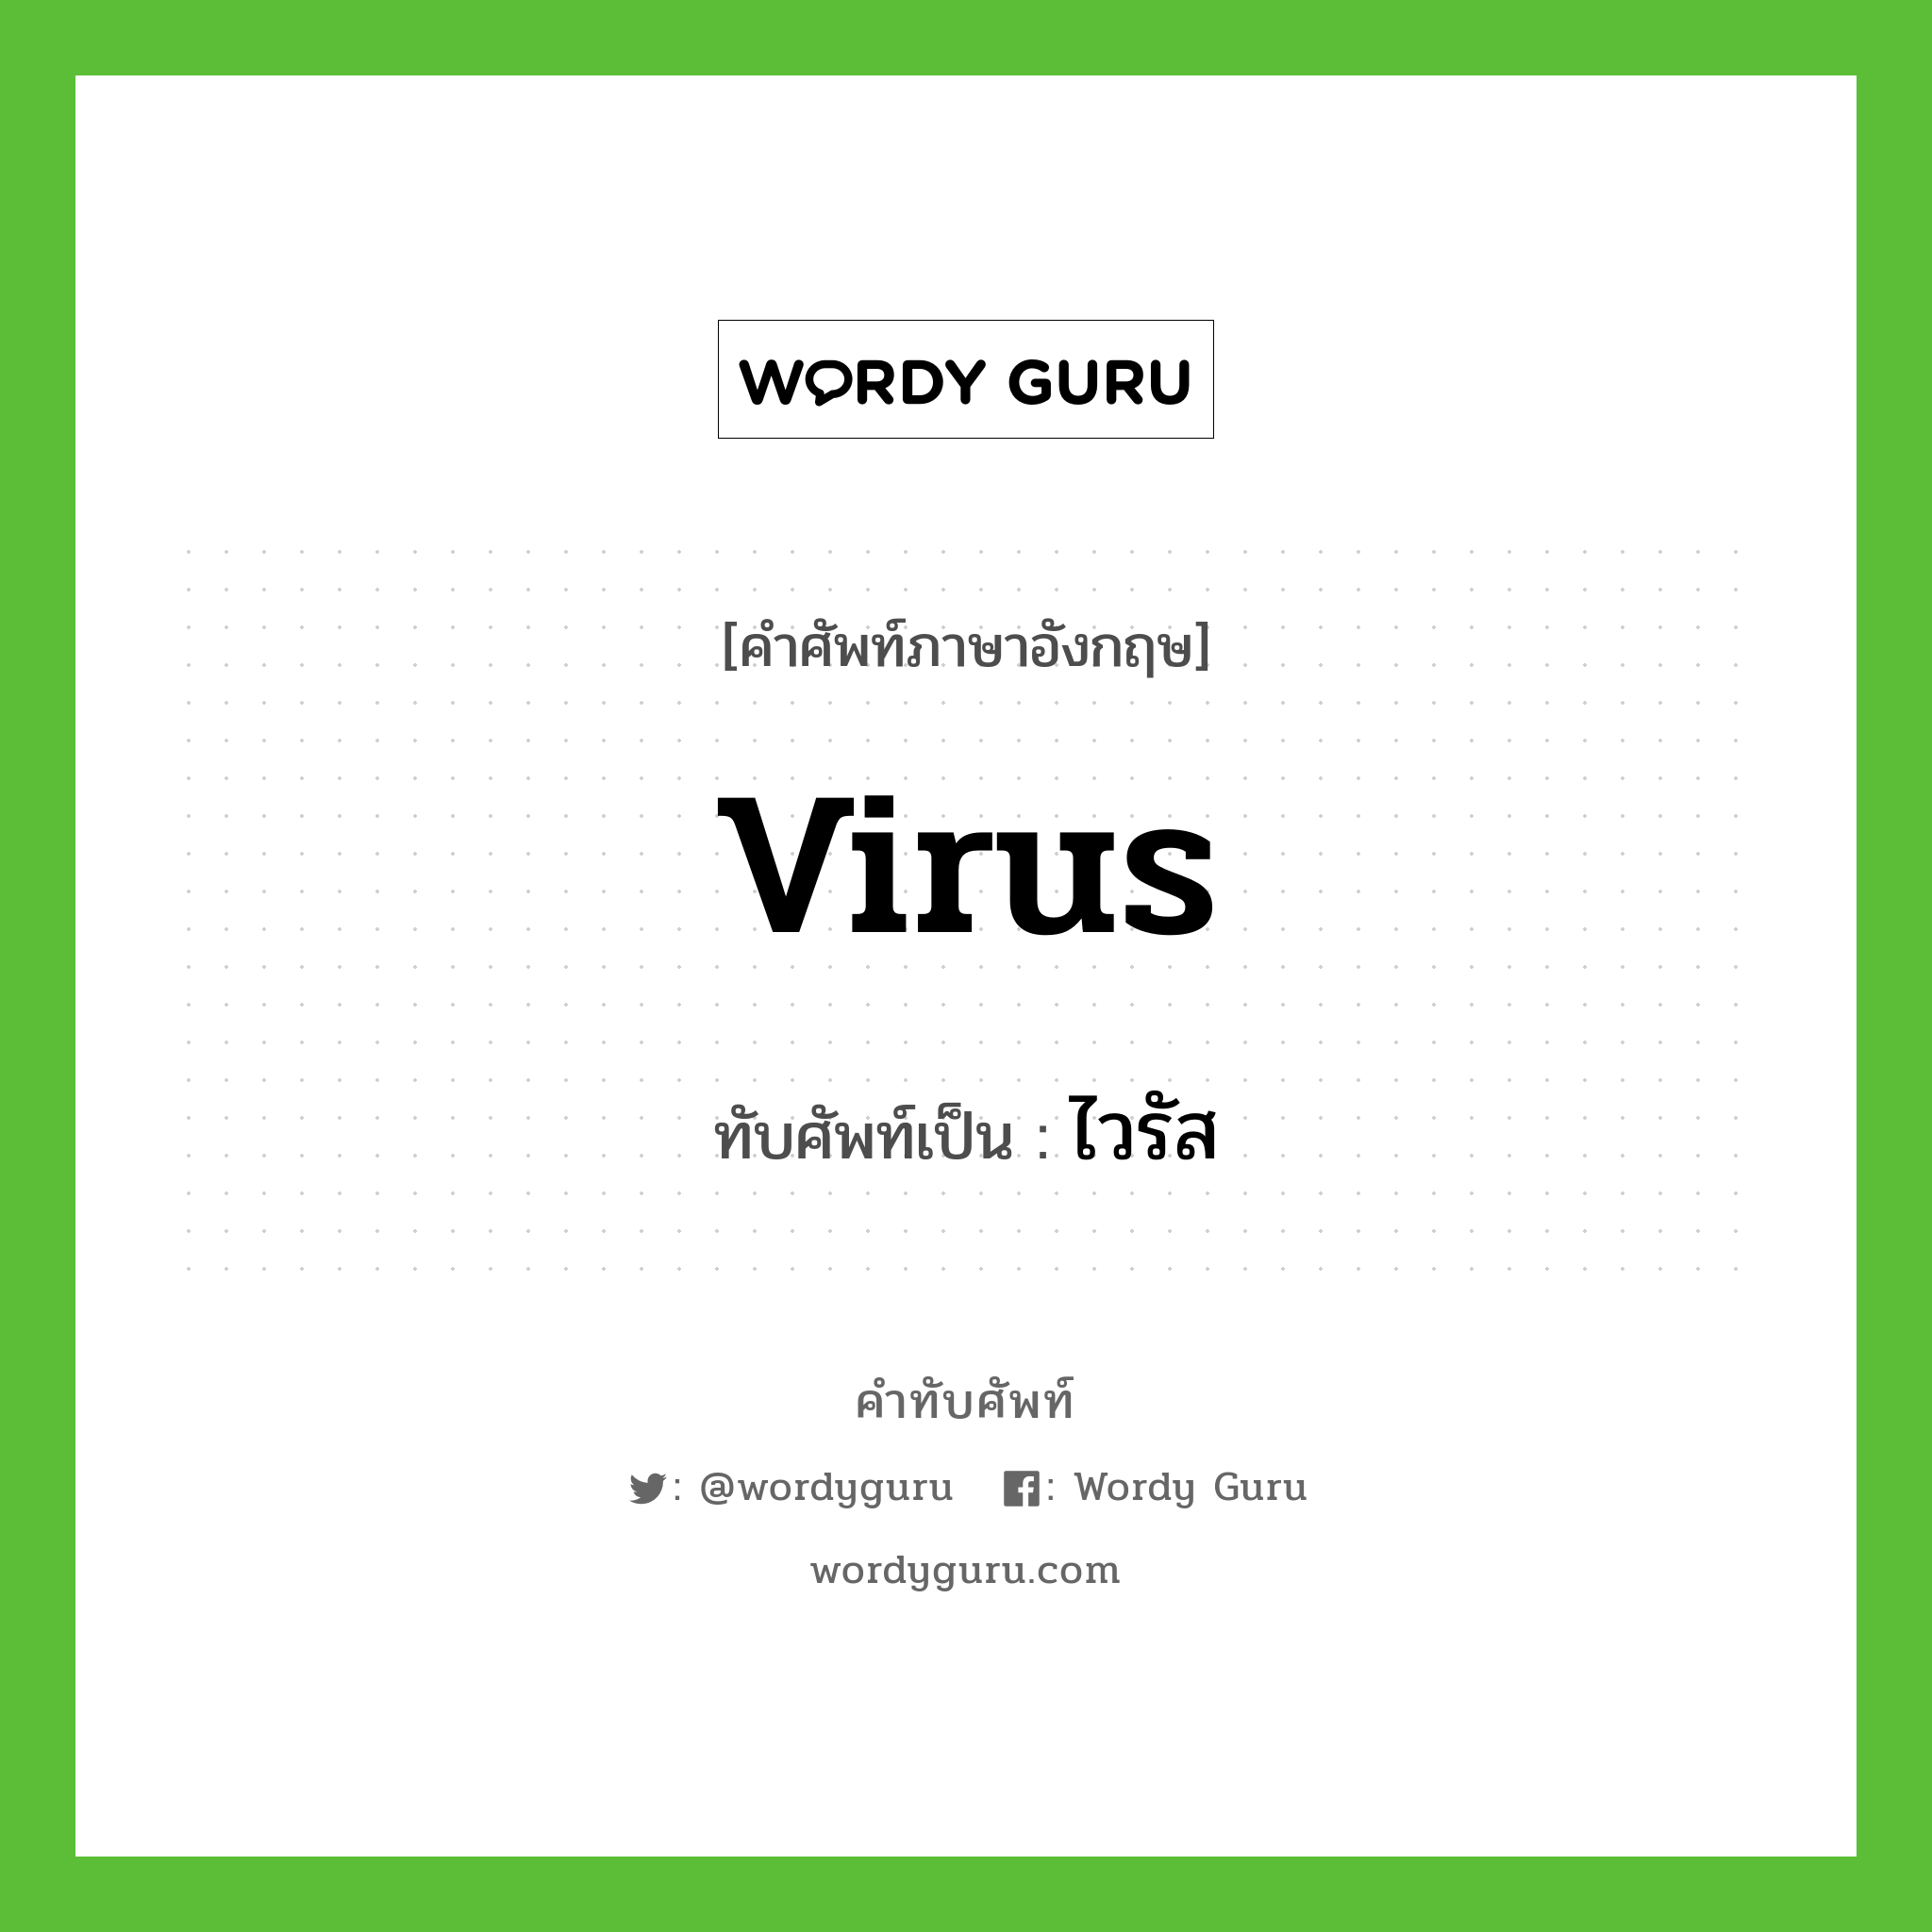 virus เขียนเป็นคำไทยว่าอะไร?, คำศัพท์ภาษาอังกฤษ virus ทับศัพท์เป็น ไวรัส